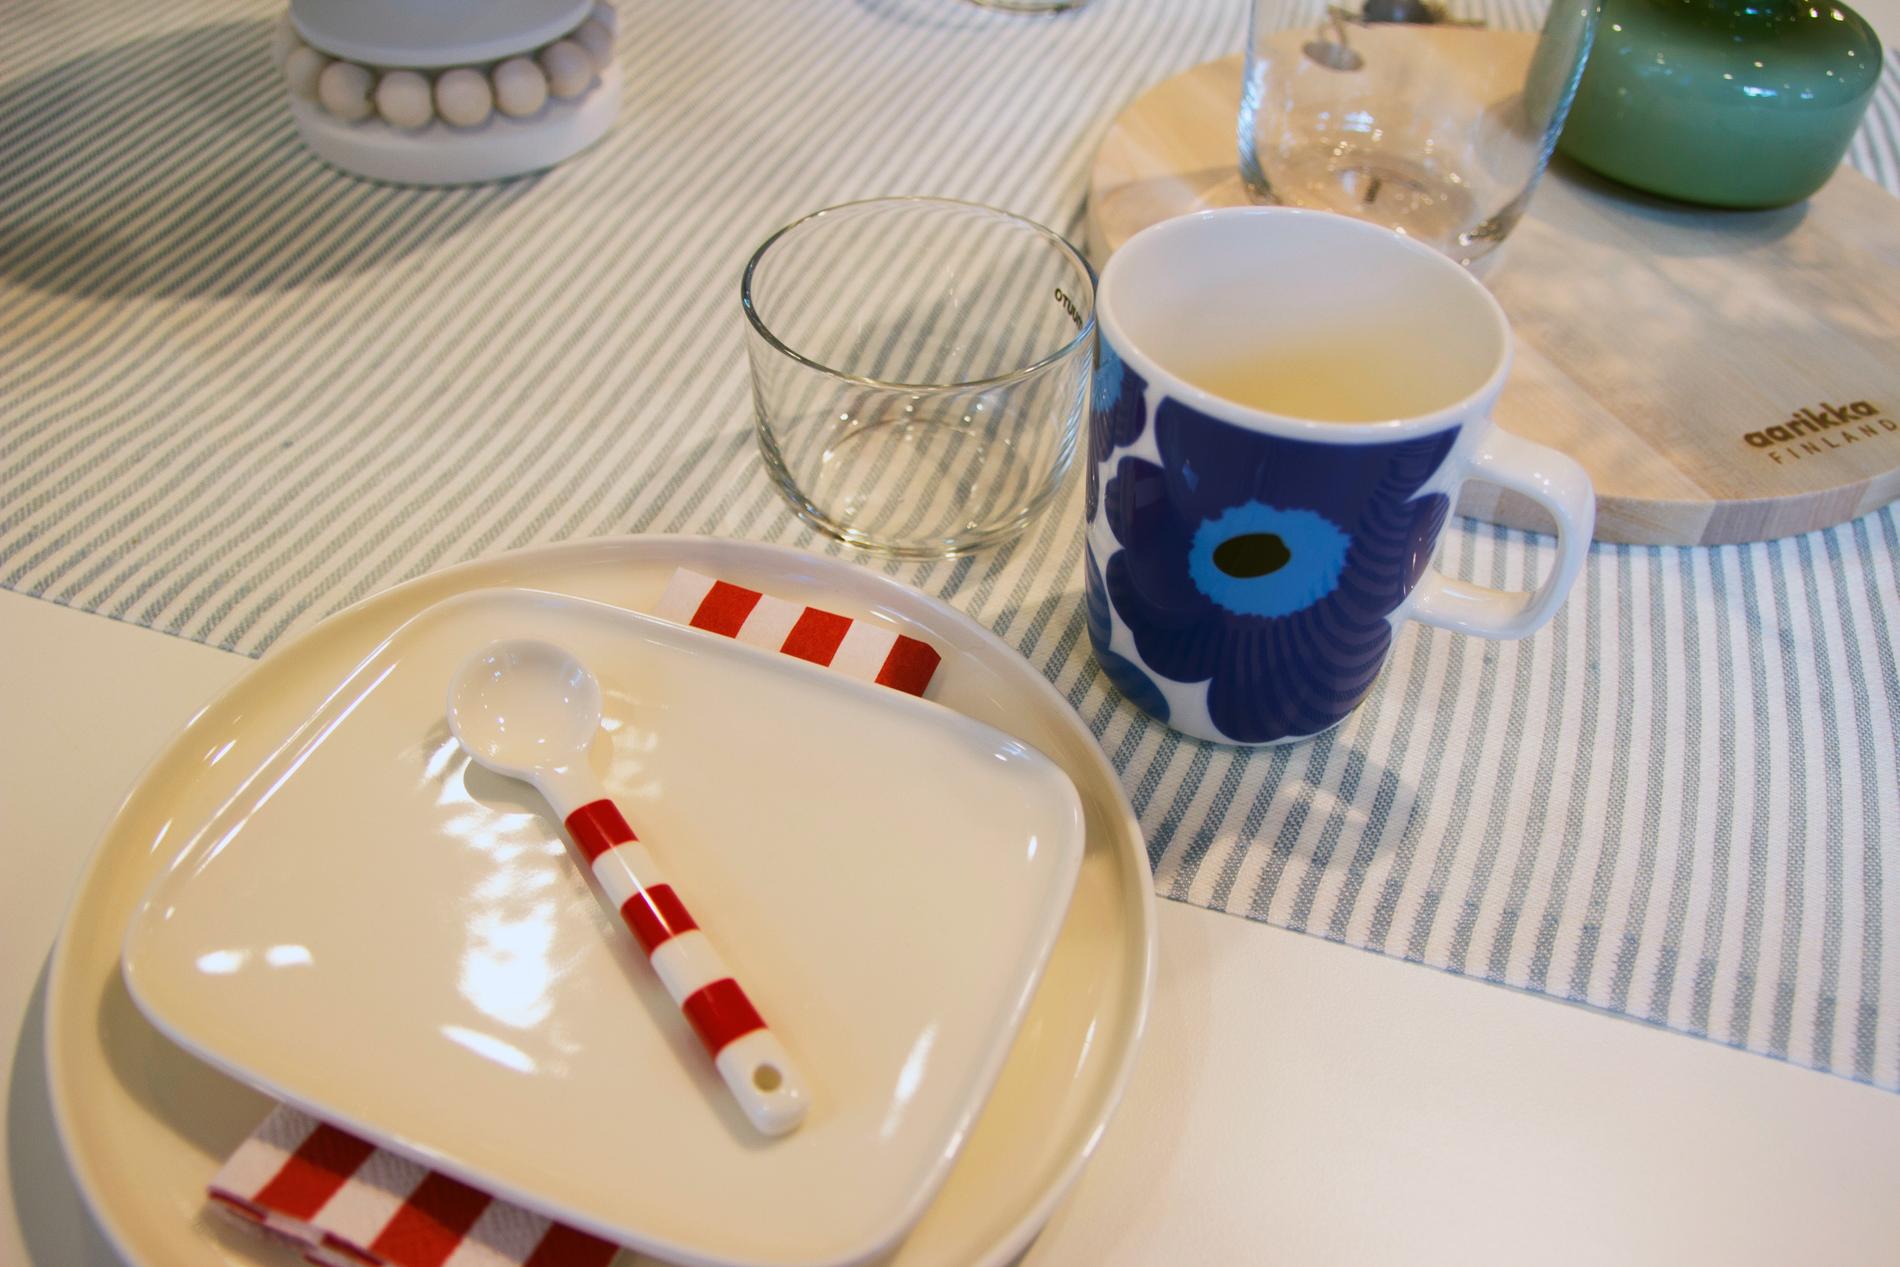  Med hvitt servise kan du ta igjen med farger i bestikk, kopper og servietter.